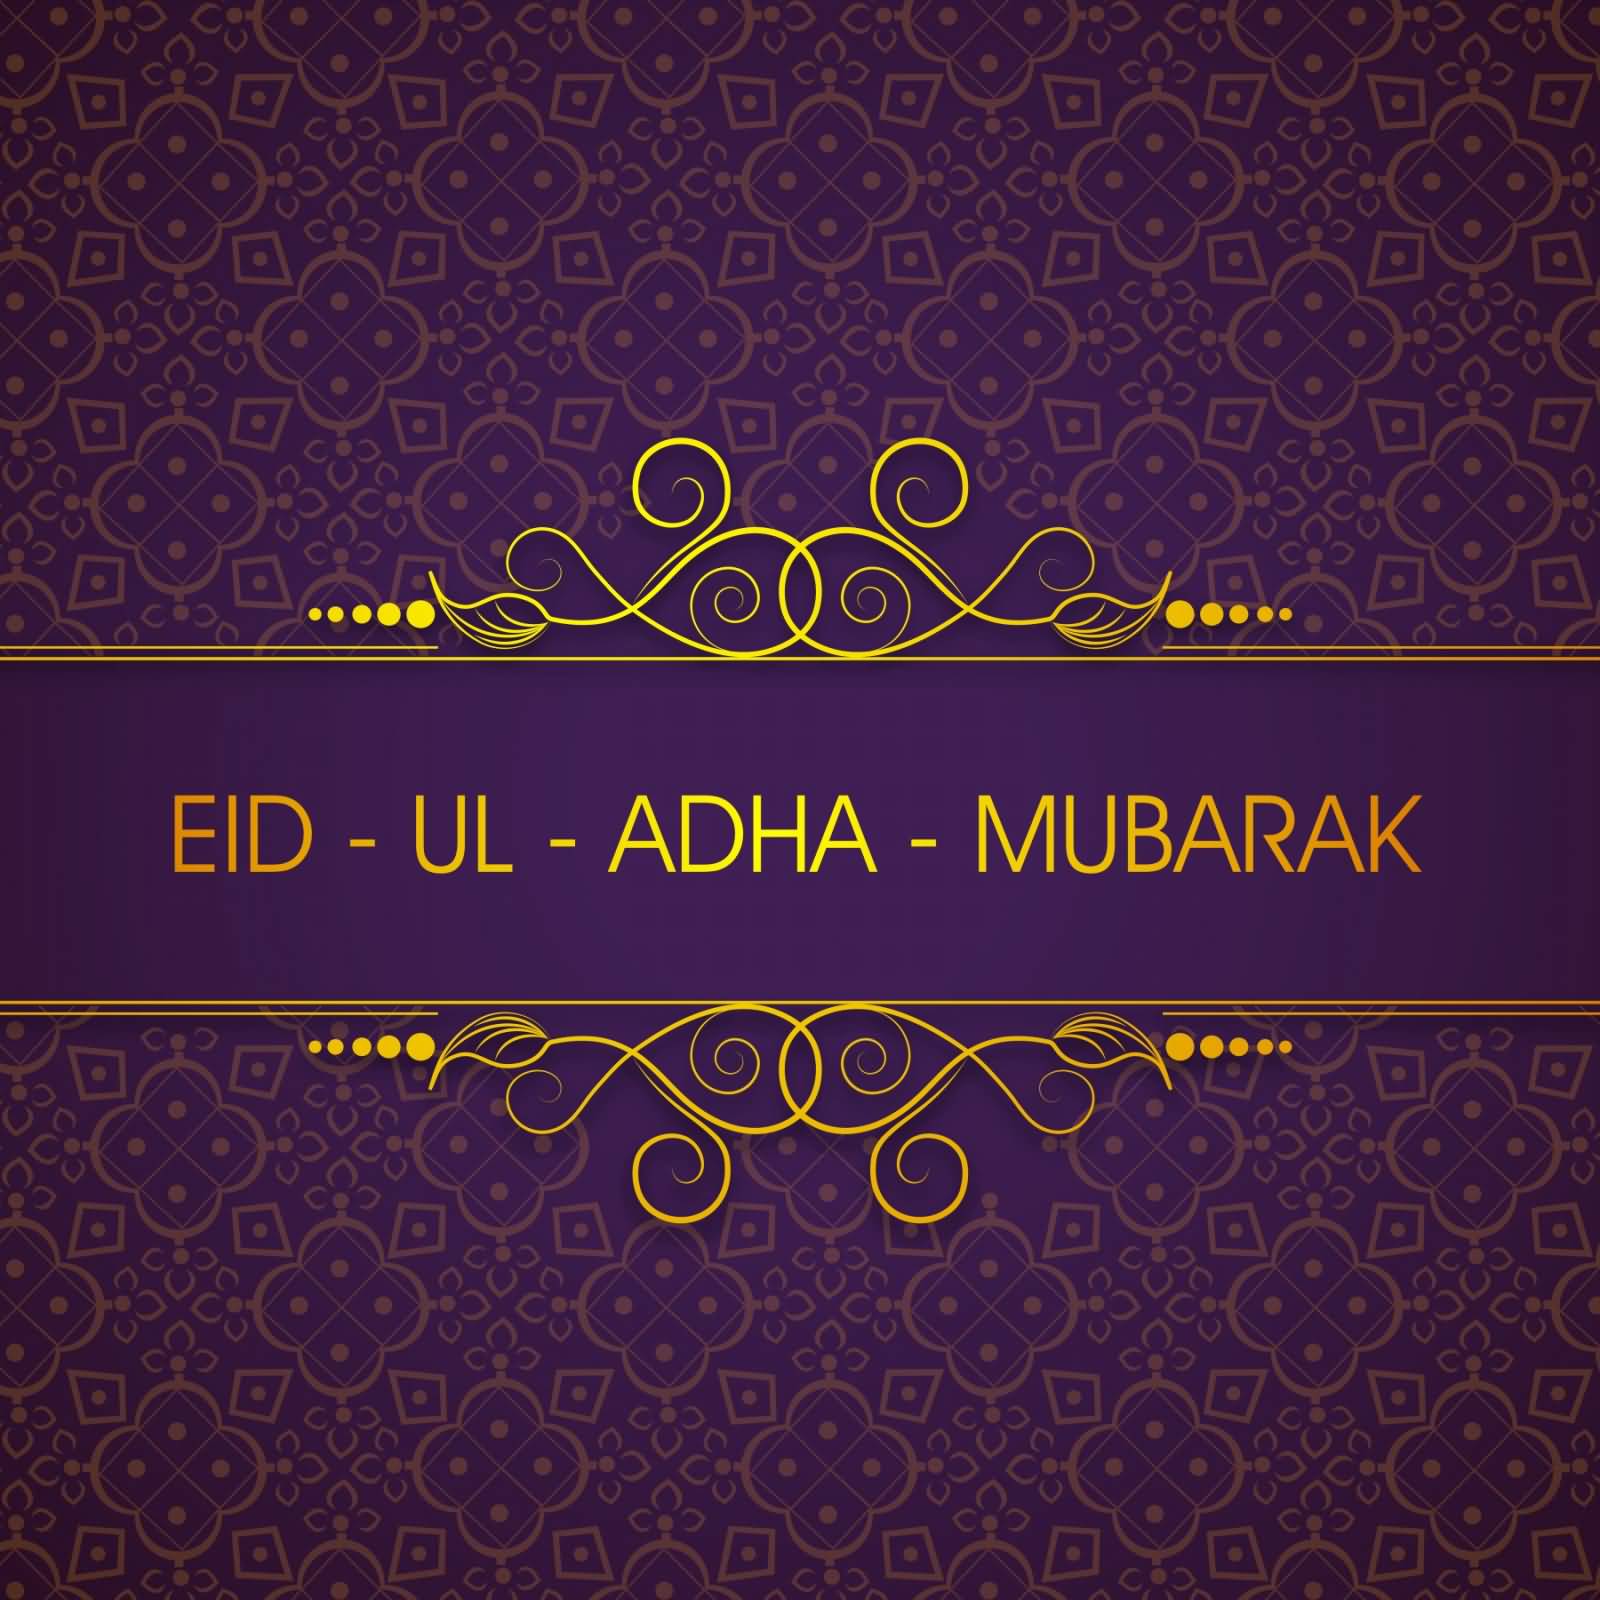 Eid ul Adha Eid Mubarak Greeting Cards 2017 - Eid ul Adha Eid Mubarak eCards 2017 - Eid Mubarak Wishes 2017 EID MUBARAK IMAGE